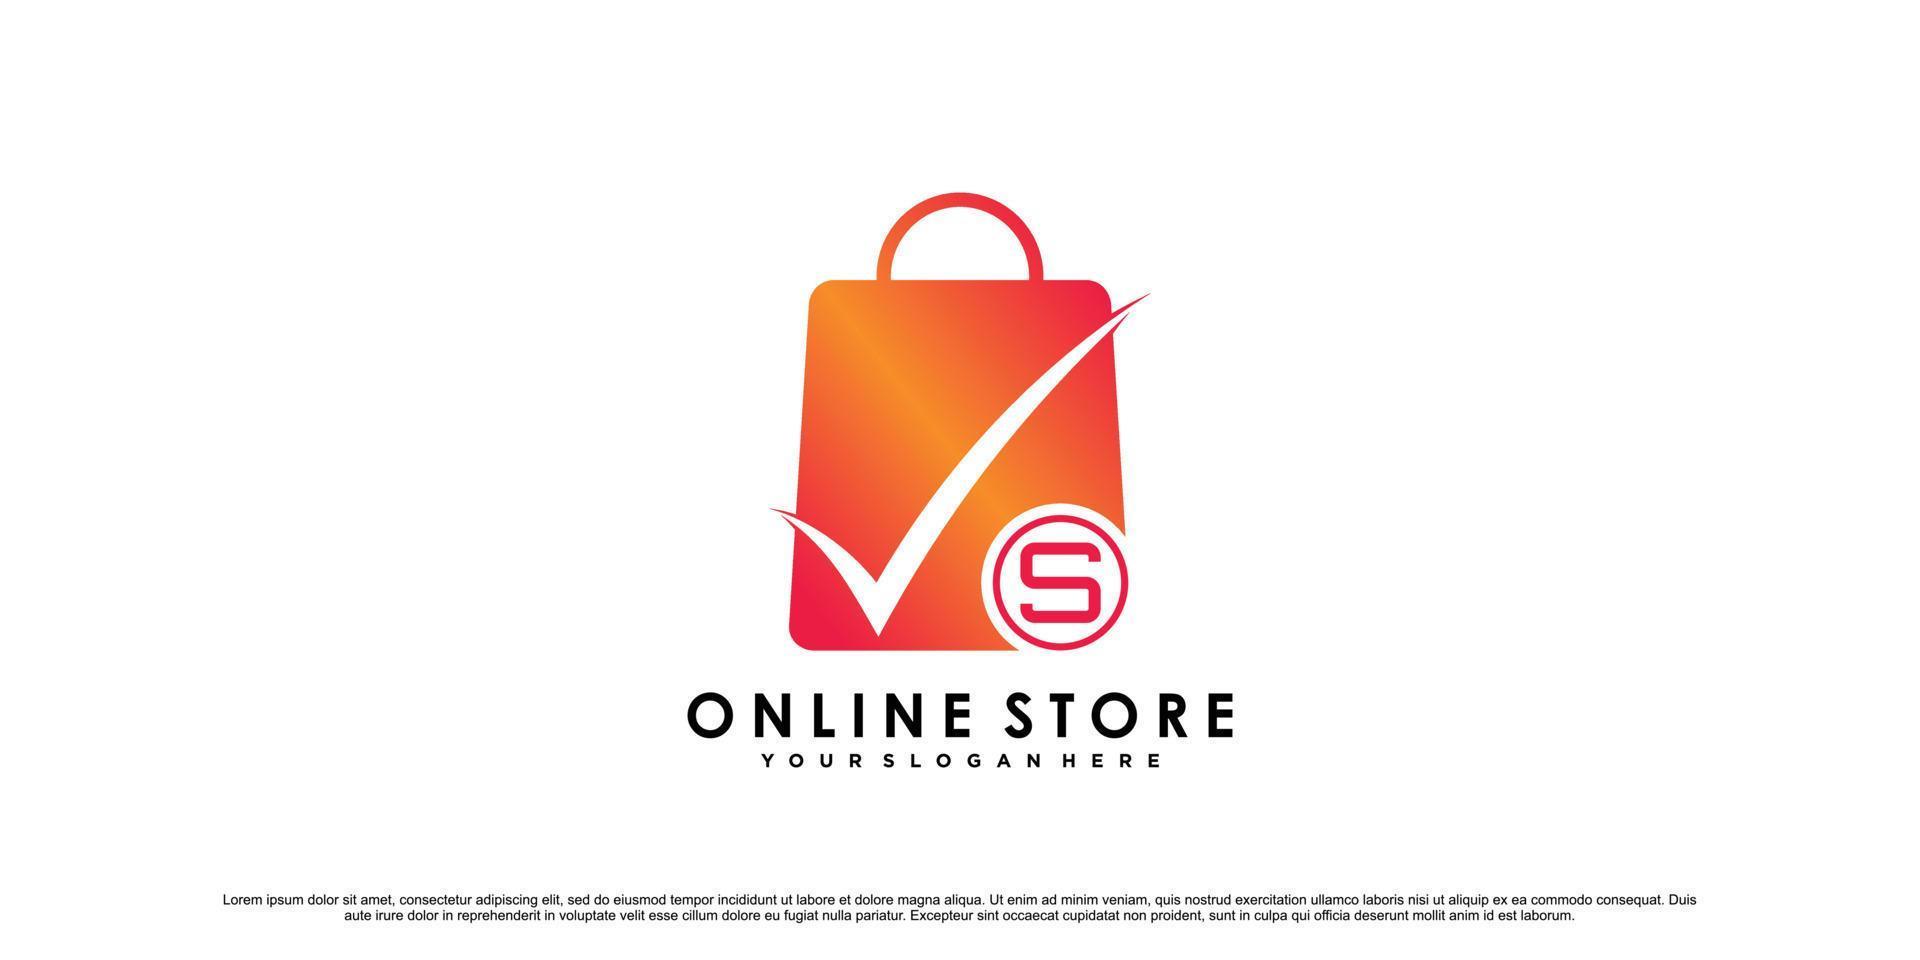 Online-Shop-Logo-Design für Commerce-Business-Symbol mit modernem Stil-Konzept-Premium-Vektor vektor